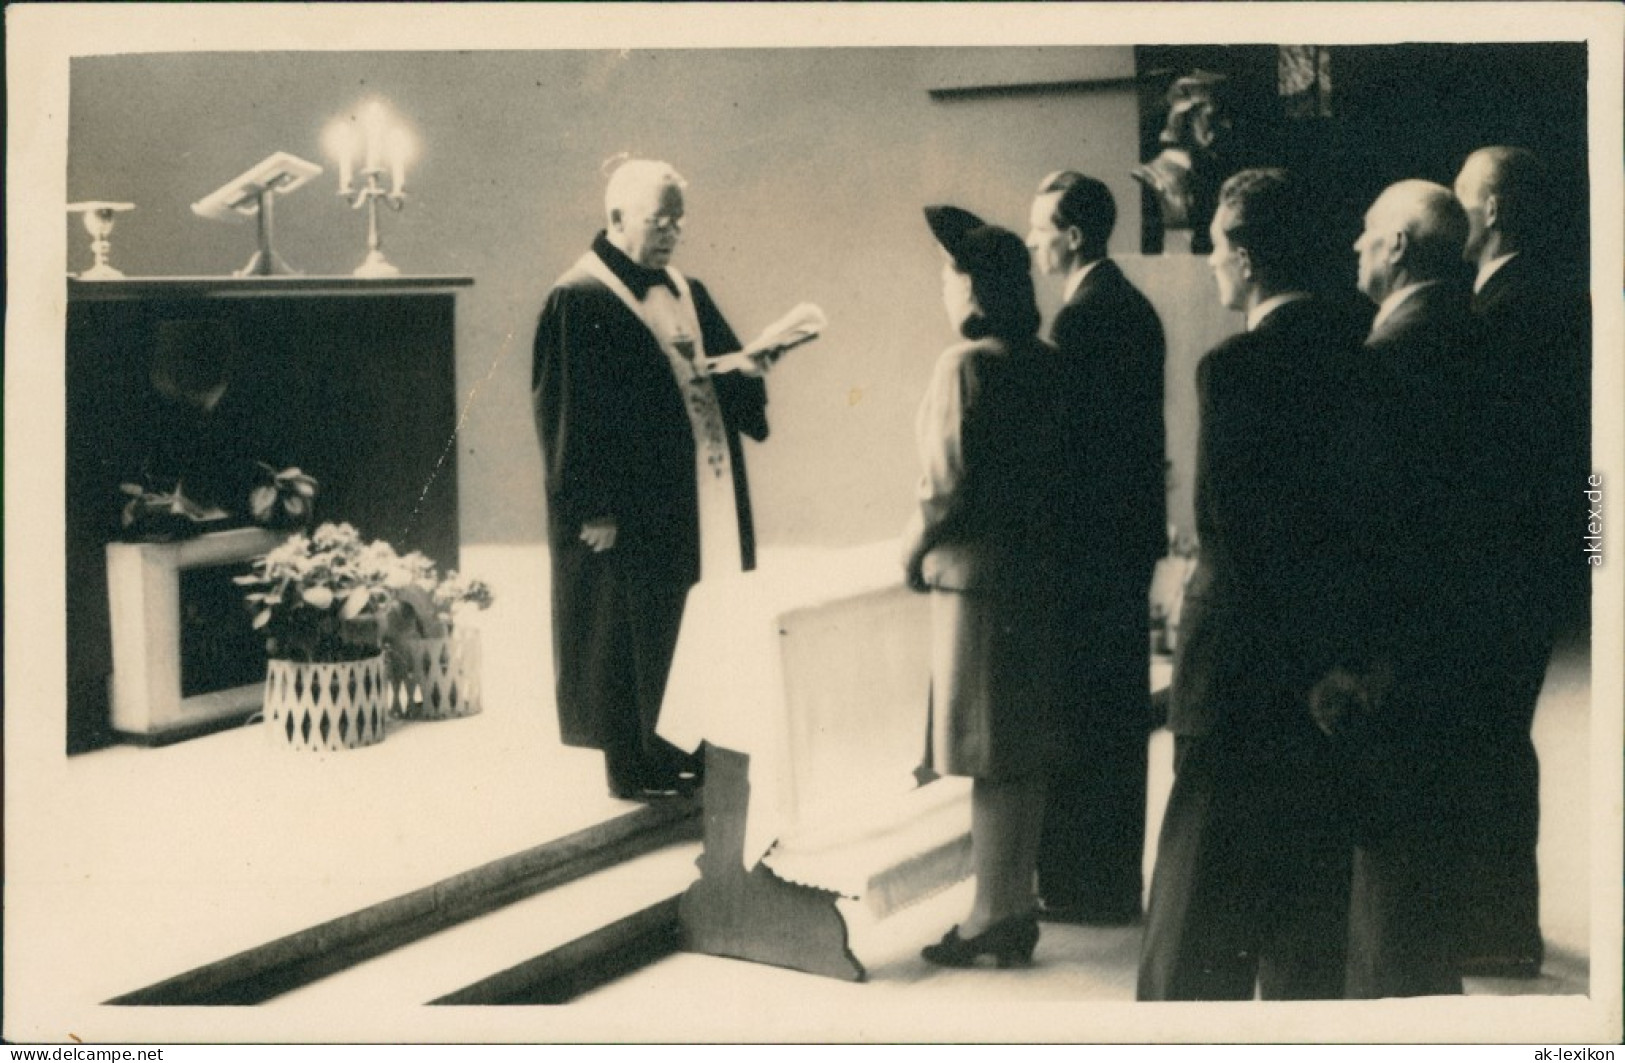  Hochzeit - Gruppenfotos - Trauung Mit Pfarrer Und Trauzeugen 1948 Privatfoto  - Marriages